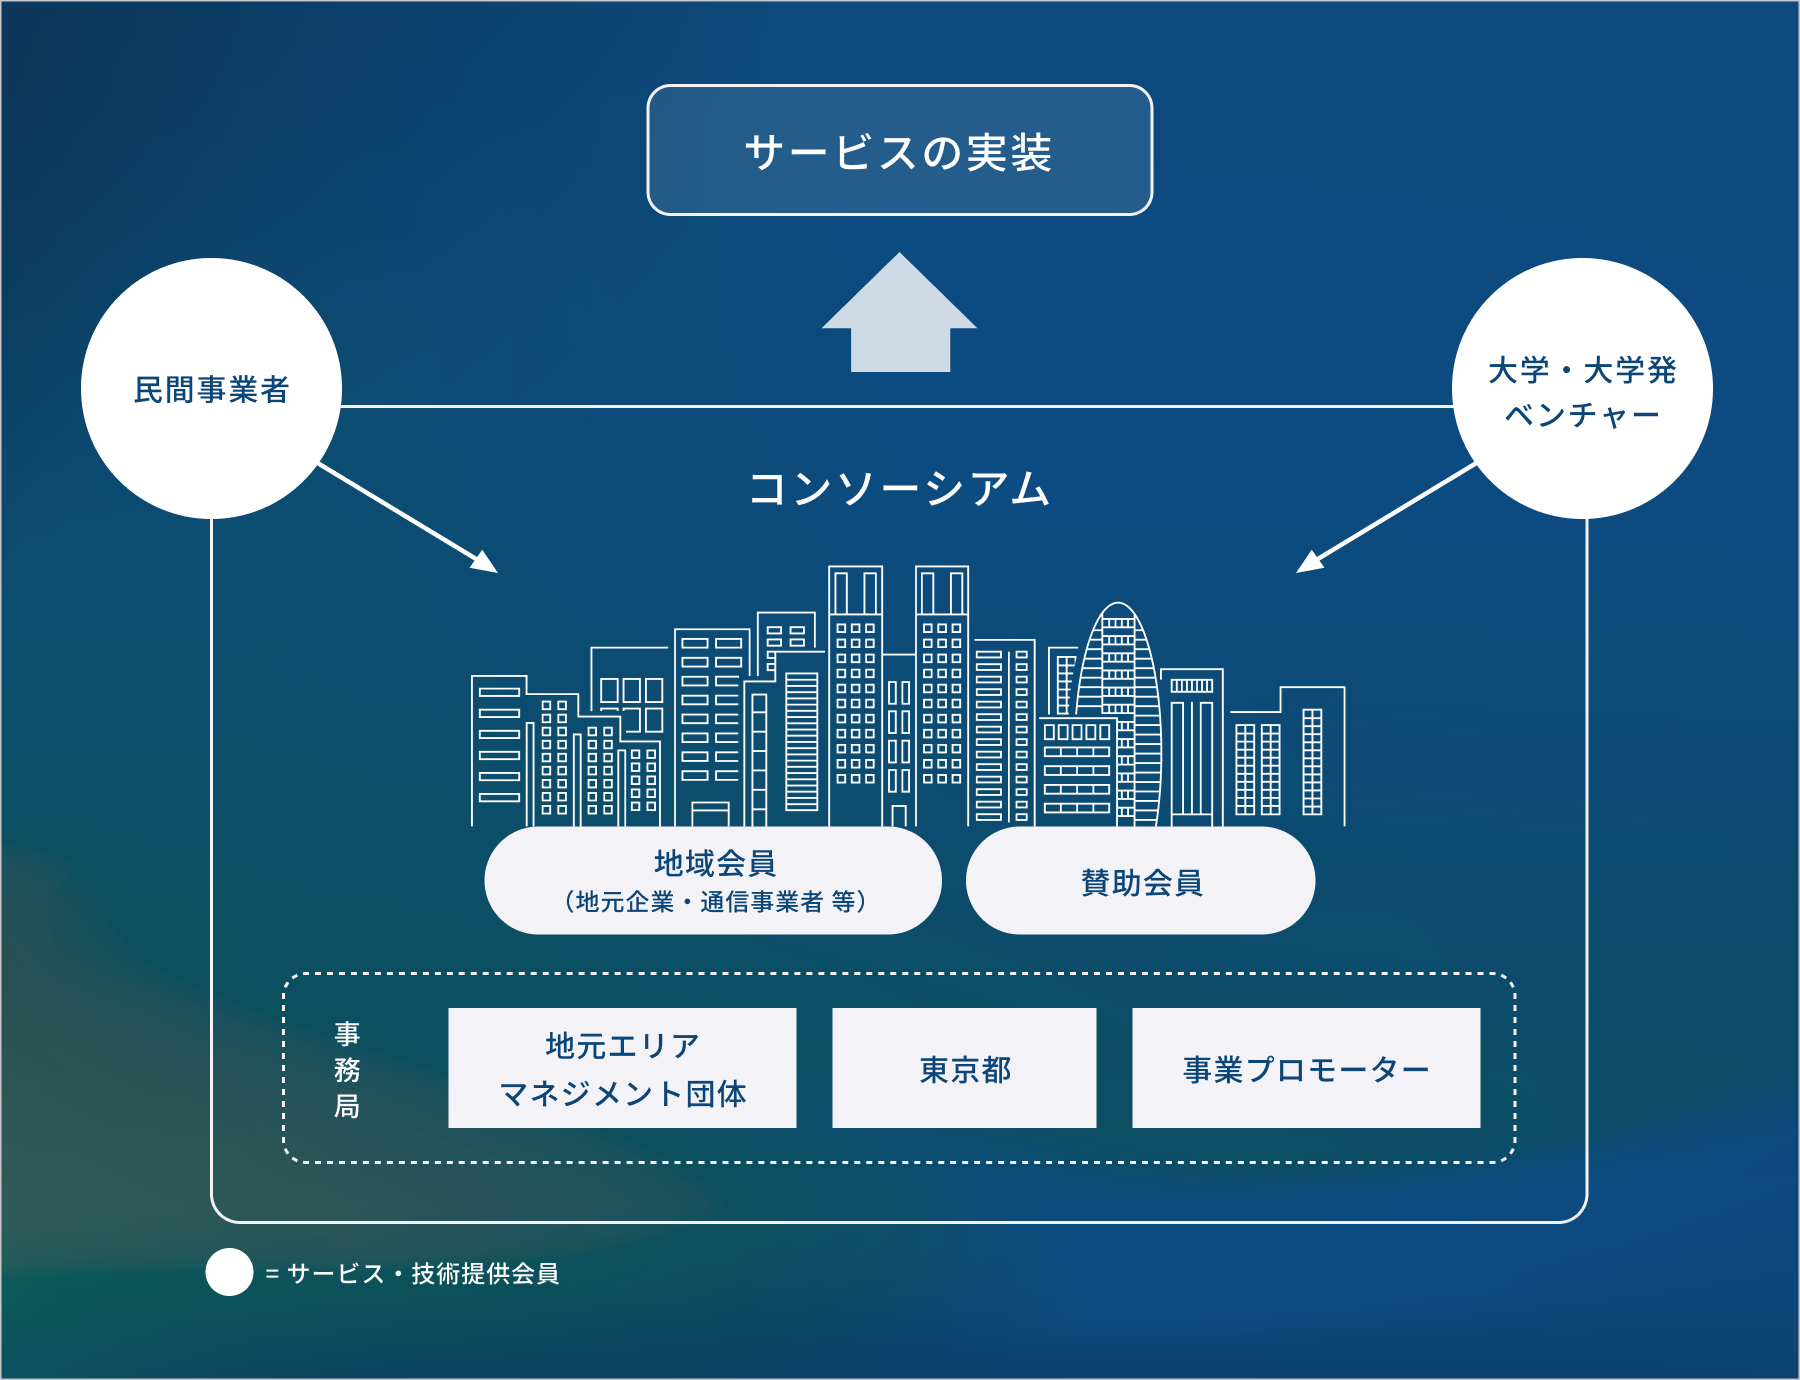 コンソーシアムの全体像と関係組織を表す図。コンソーシアムは地元企業・通信事業者等の地域会員、賛助会員を中心に、外部からもサービス・技術提供会員である5G活用サービス事業者、大学発ベンチャー、大学等、スタートアップ等の組織で構成される。地元エリアマネジメント団体や東京都は事務局としてバックアップしながら、コンソーシアム組織はサービスの実装を目指す。